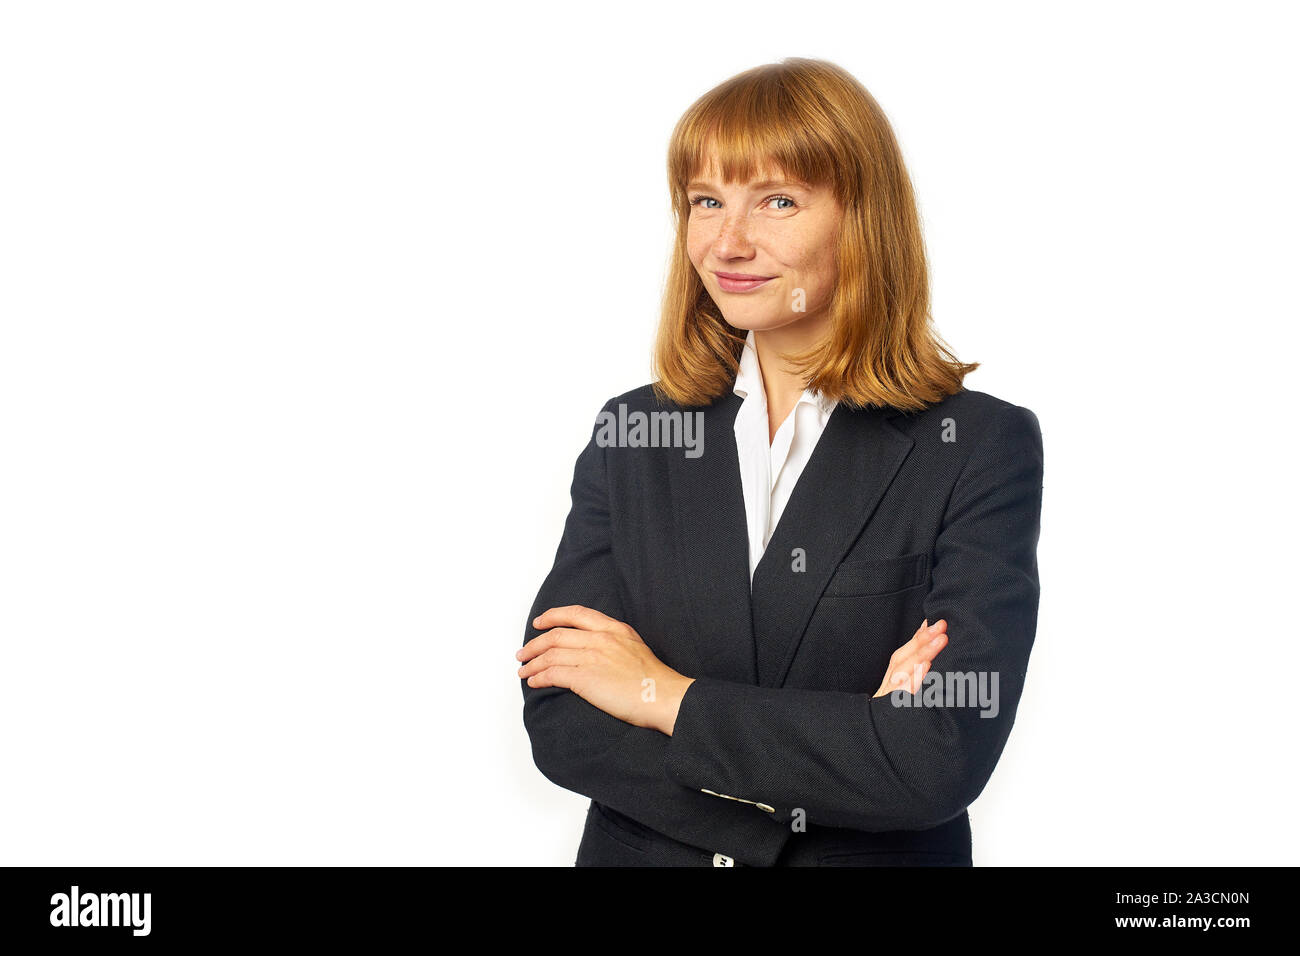 Image of female office worker habillé en chemise blanche et blazer sombre. Femme rousse en vêtements d'affaires regardant la caméra et smiling Banque D'Images